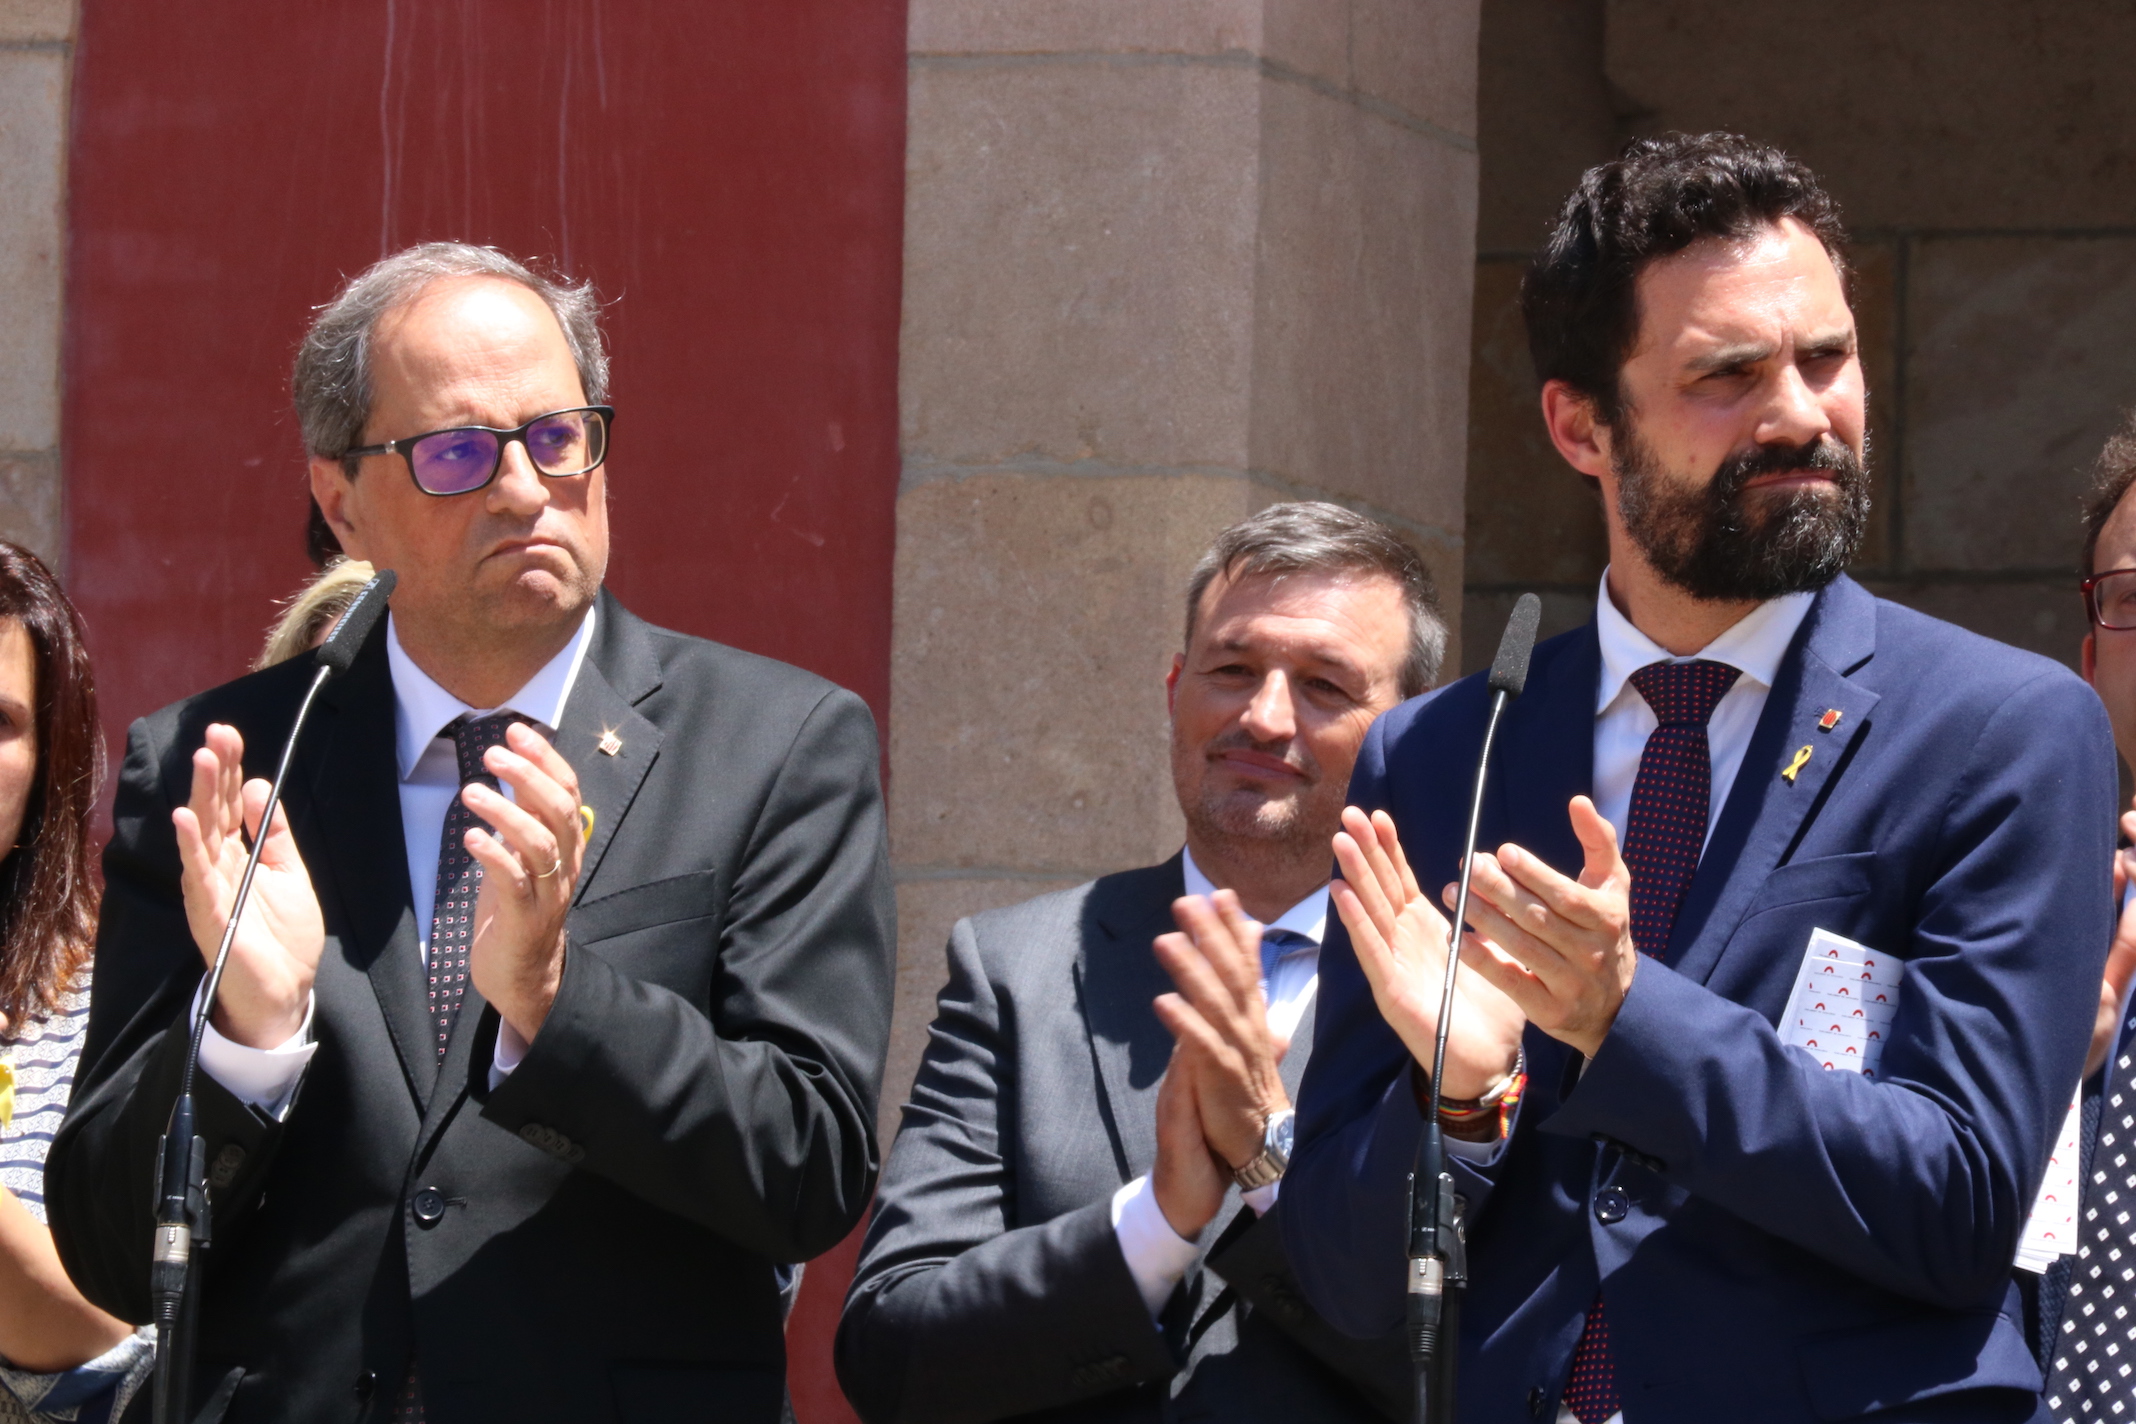 QuimTorra y Roger Torrent aplauden después de reclamar la libertad de los políticos presos.